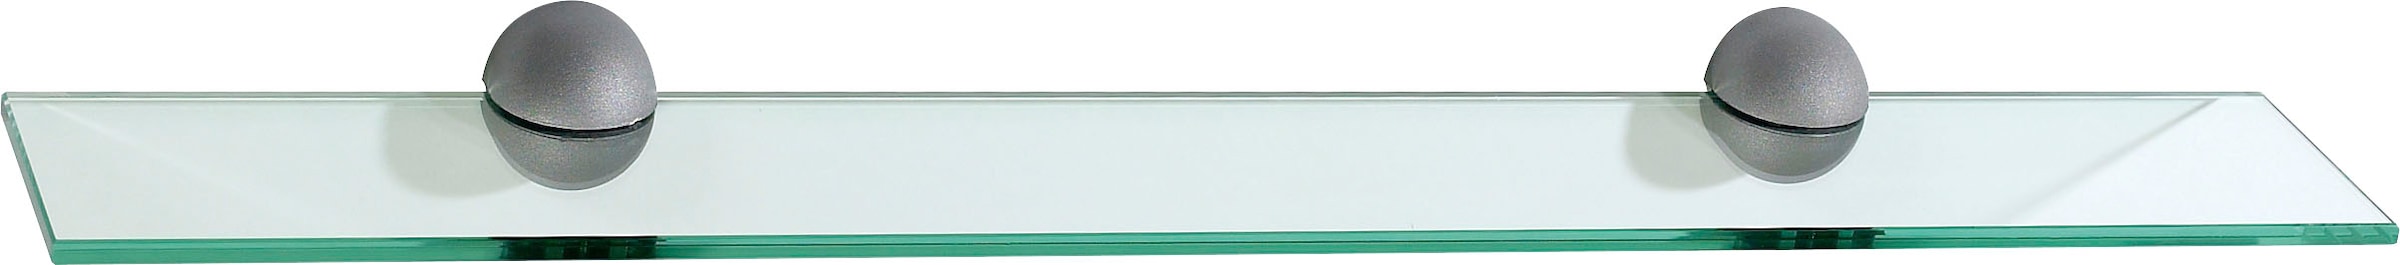 Ablageelement »Quickset 955 Glasablageboden für Wand, 72 cm breit«, inkl. Befestigung,...